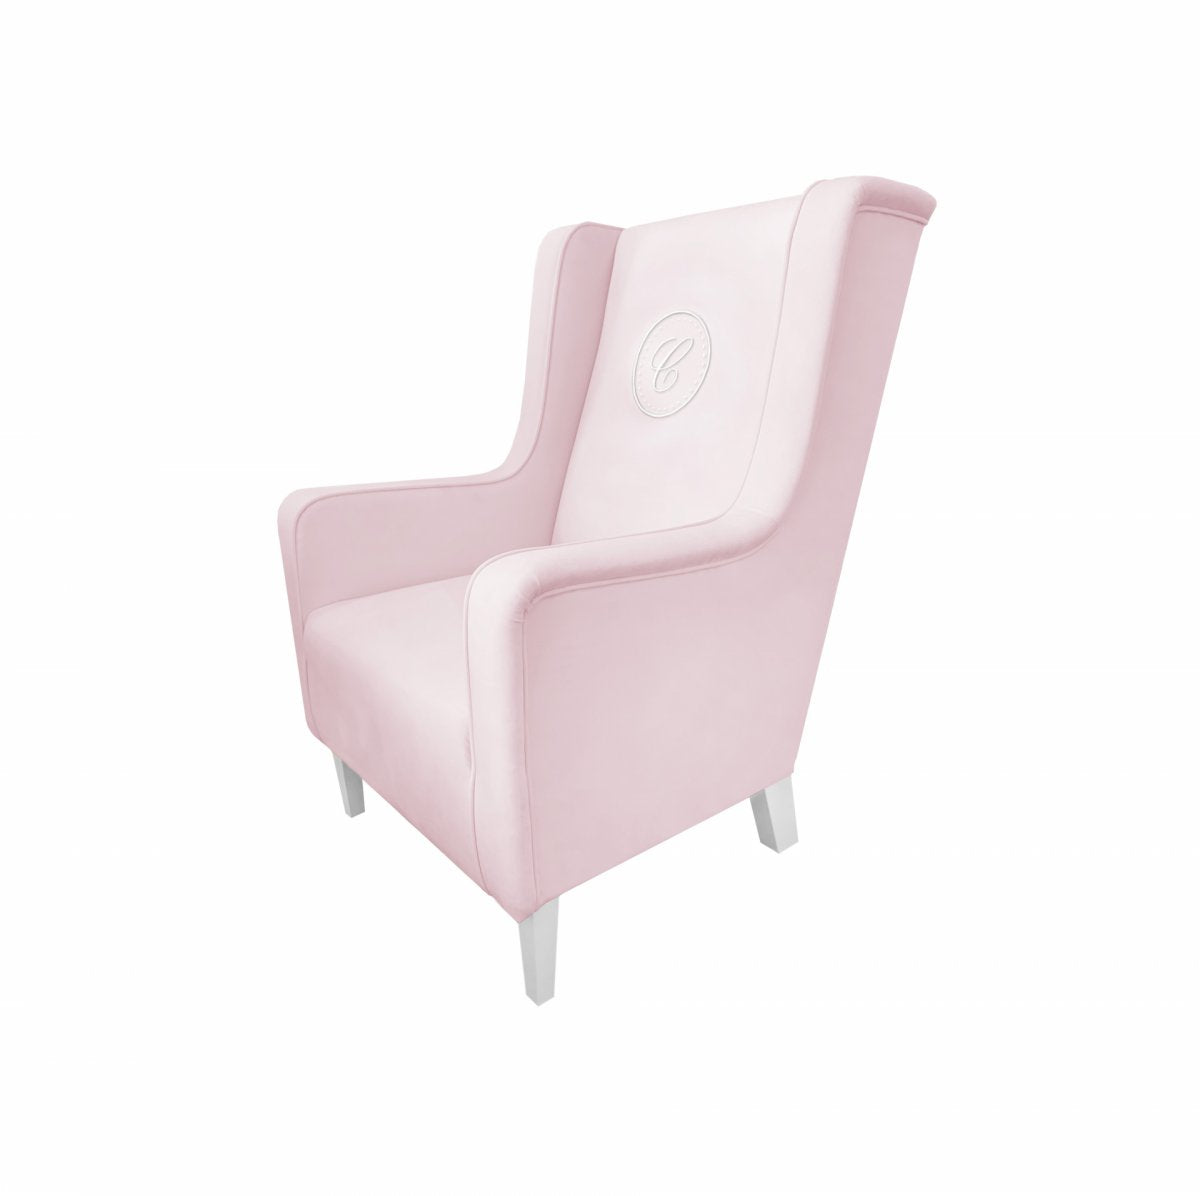 Armchair Modern Pink with Emblem